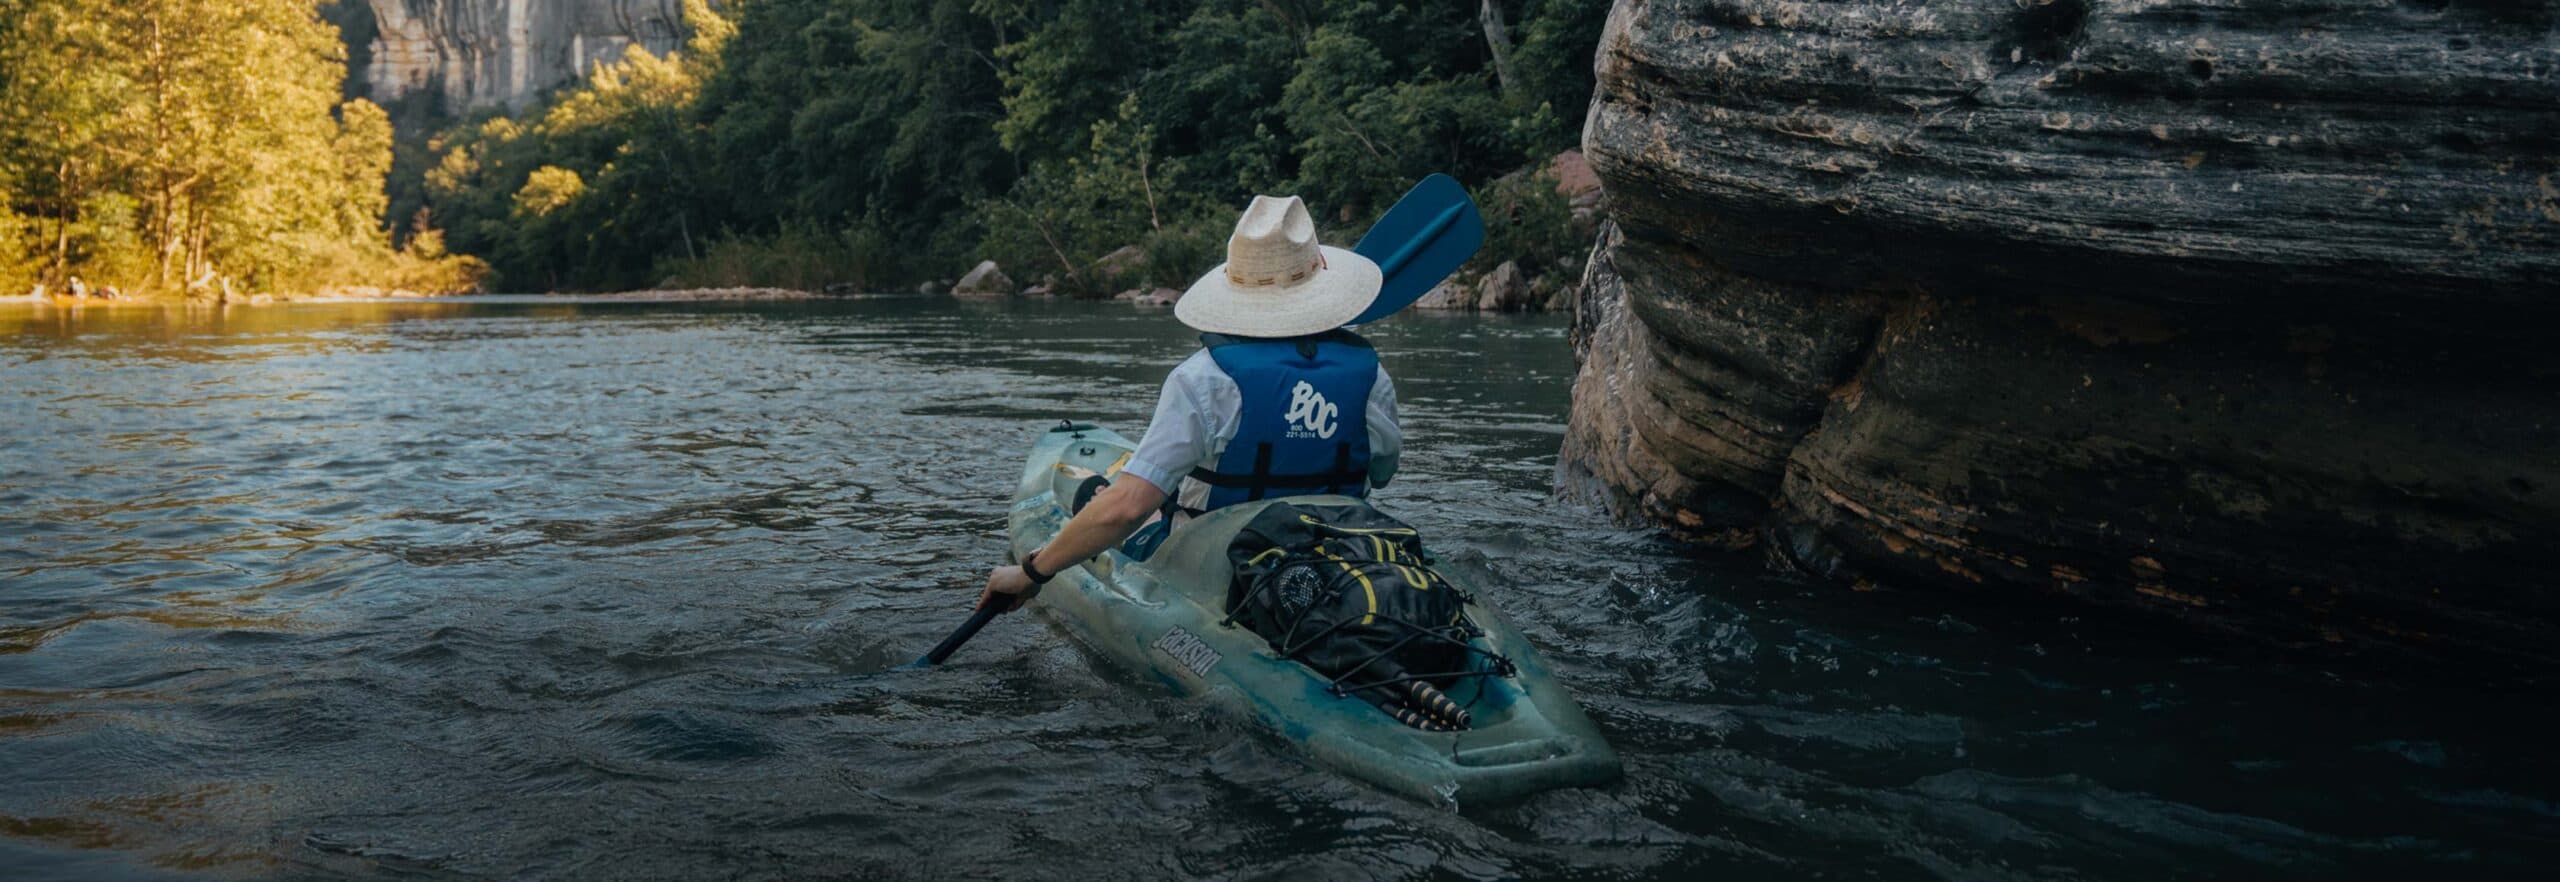 Man kayaking on a river